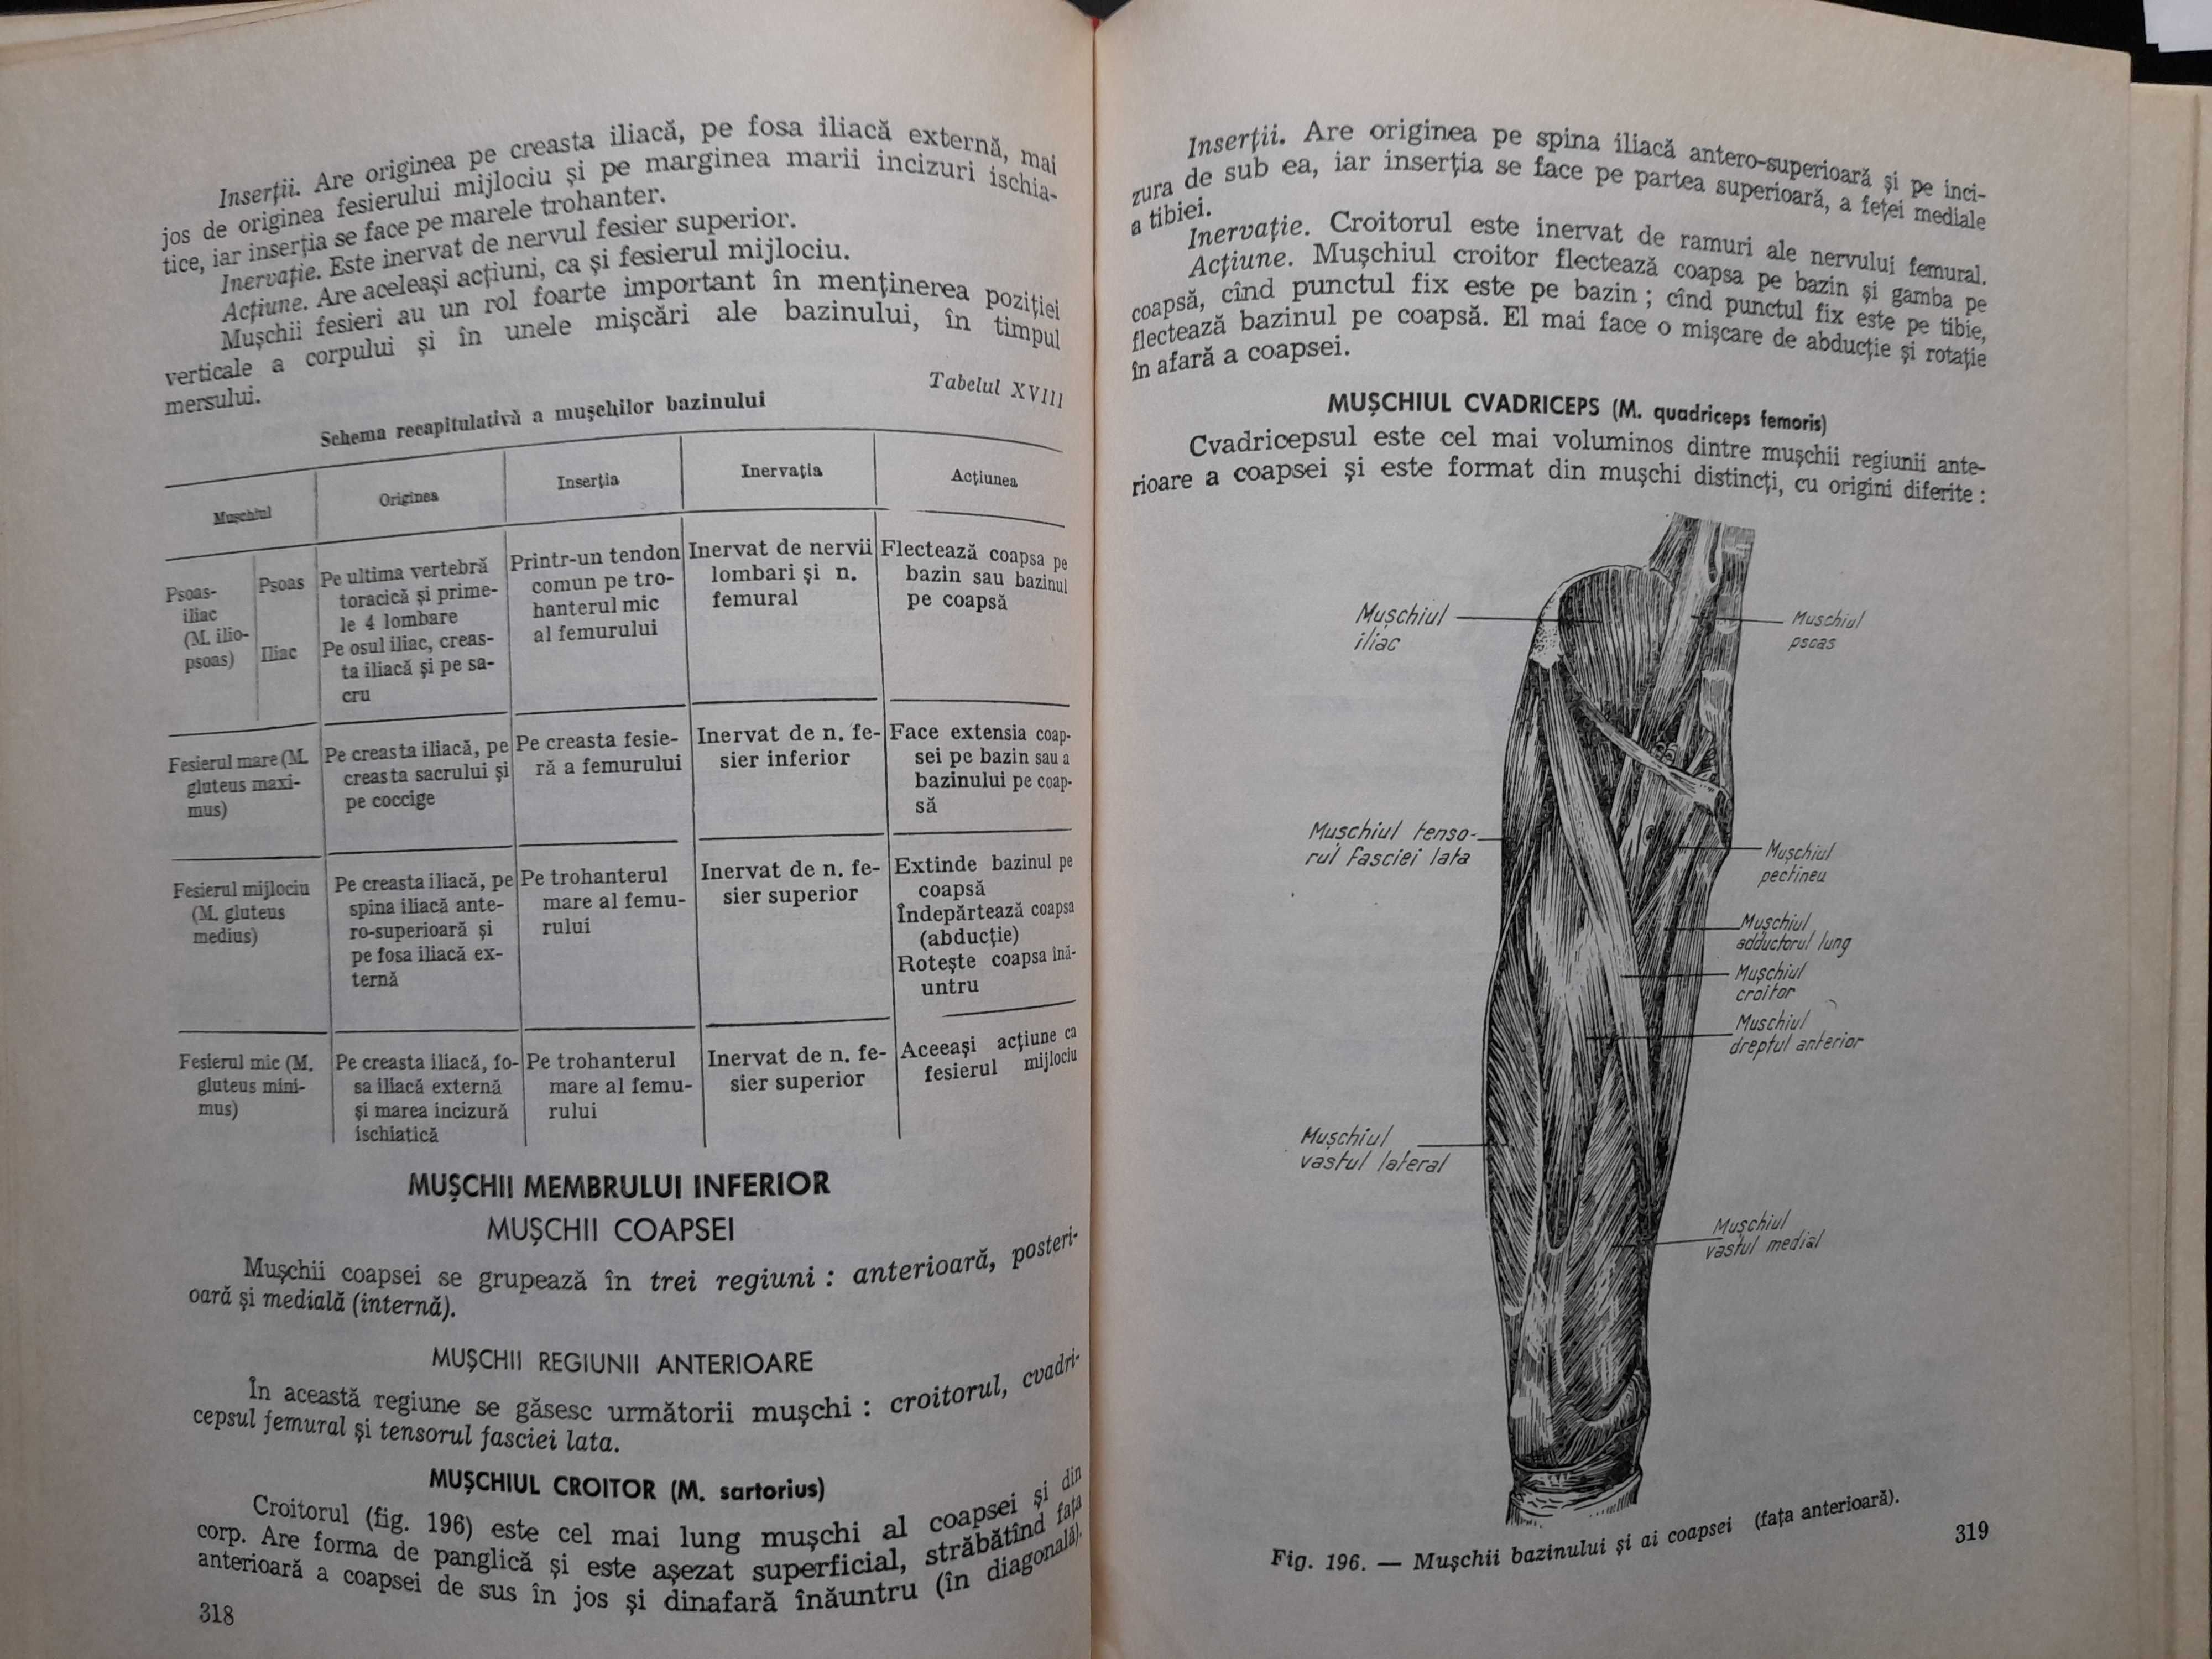 Anatomia si fiziologia omului